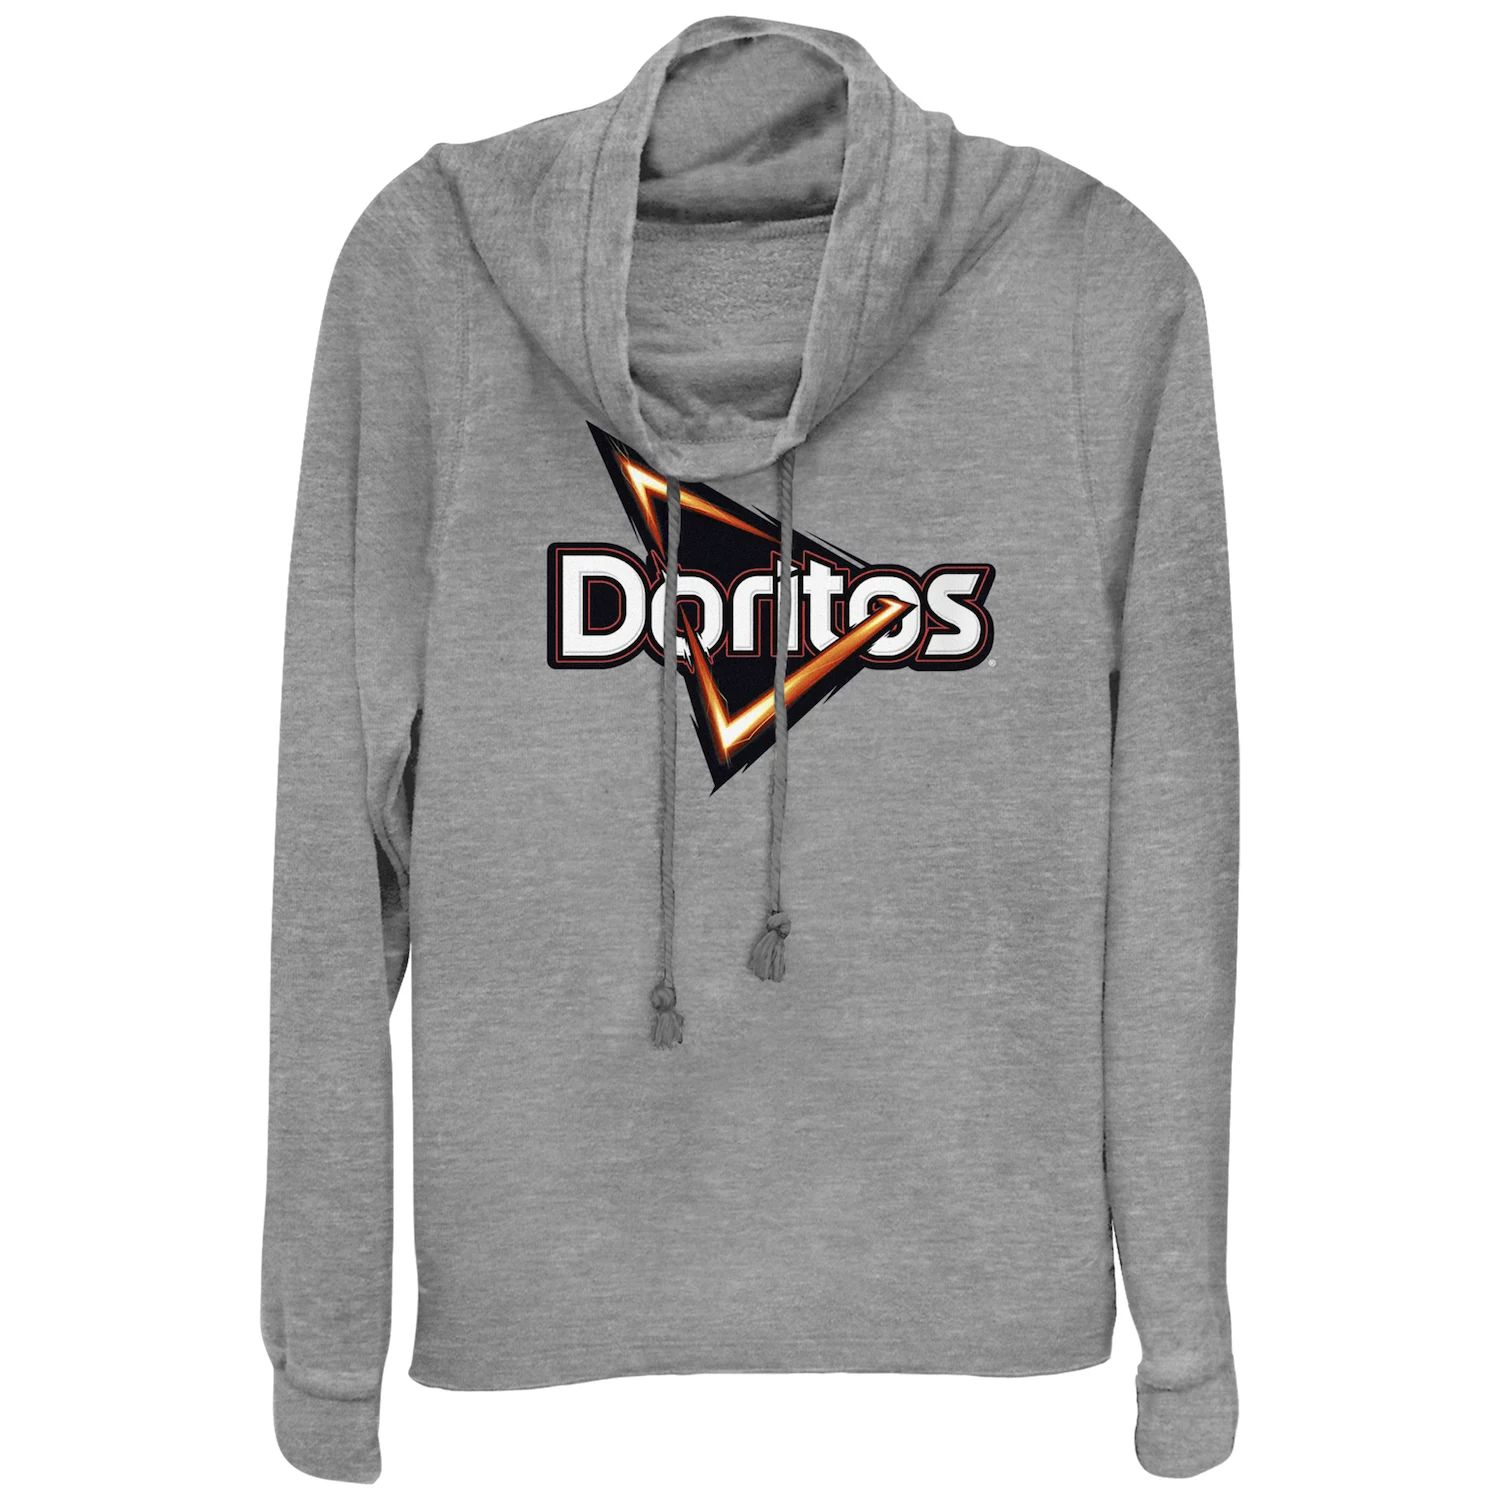 Пуловер с воротником-хомутом и классическим логотипом Doritos Triangle Chips для юниоров Doritos doritos dinamita flaming hot 145 gm